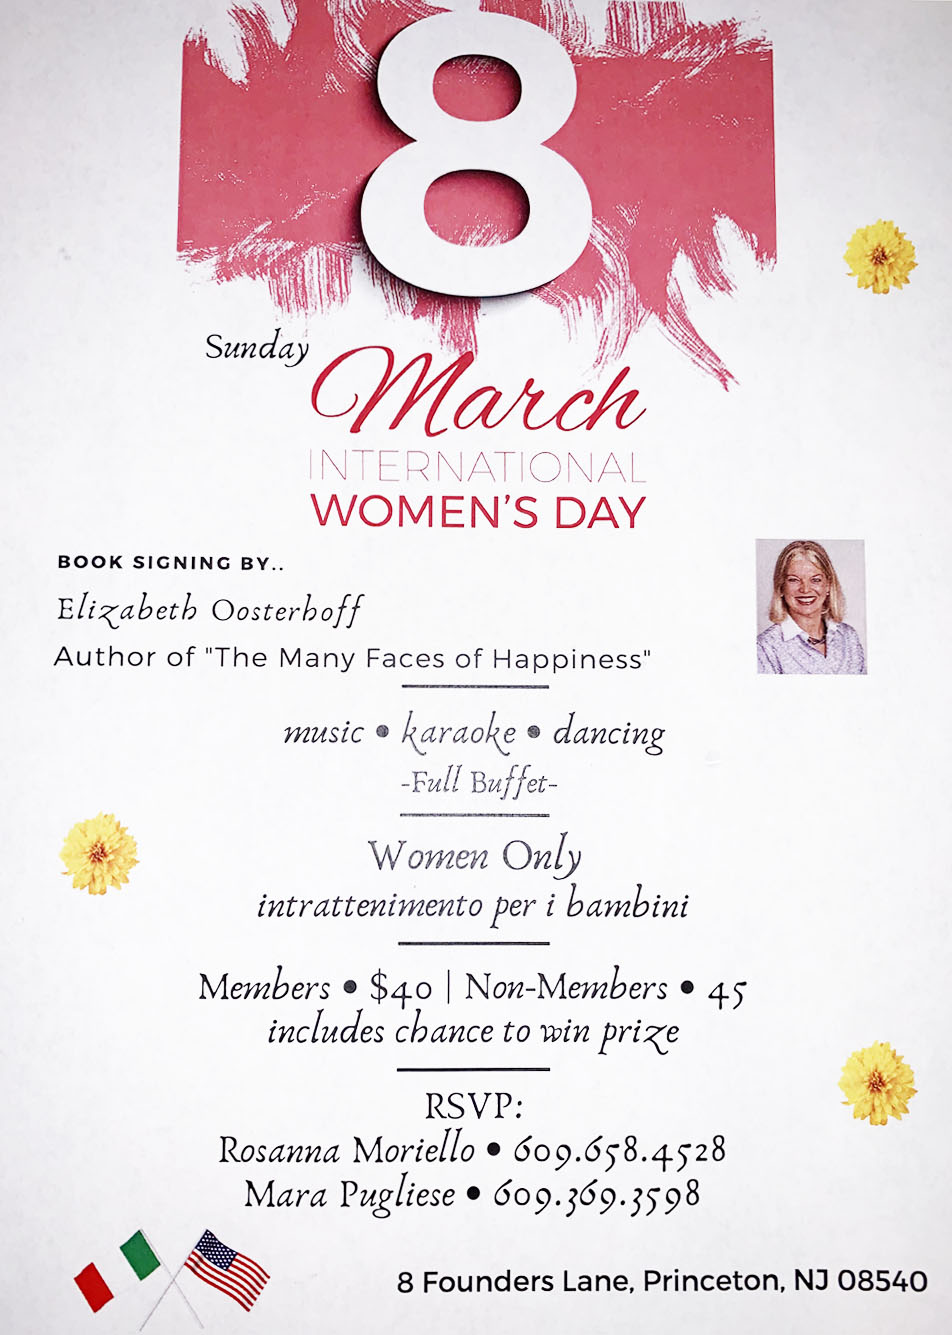 You are cordially invited to "International Women's Day" * March 8, 2020, Festa Della Donna